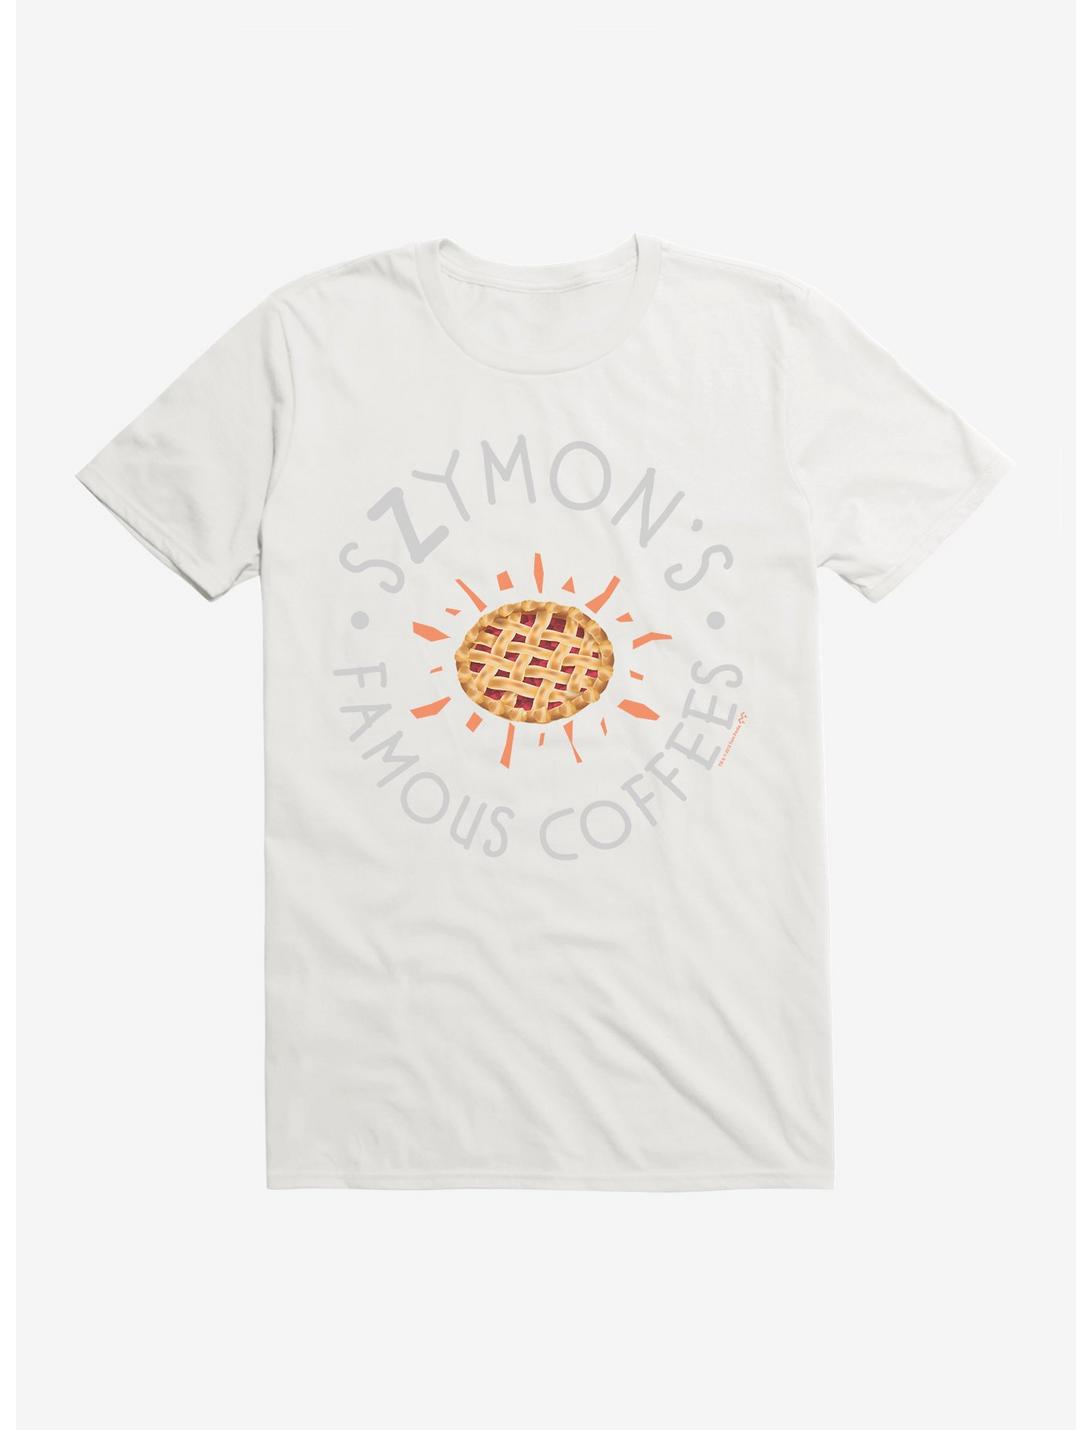 Twin Peaks Szymon's Famous Icon T-Shirt, , hi-res